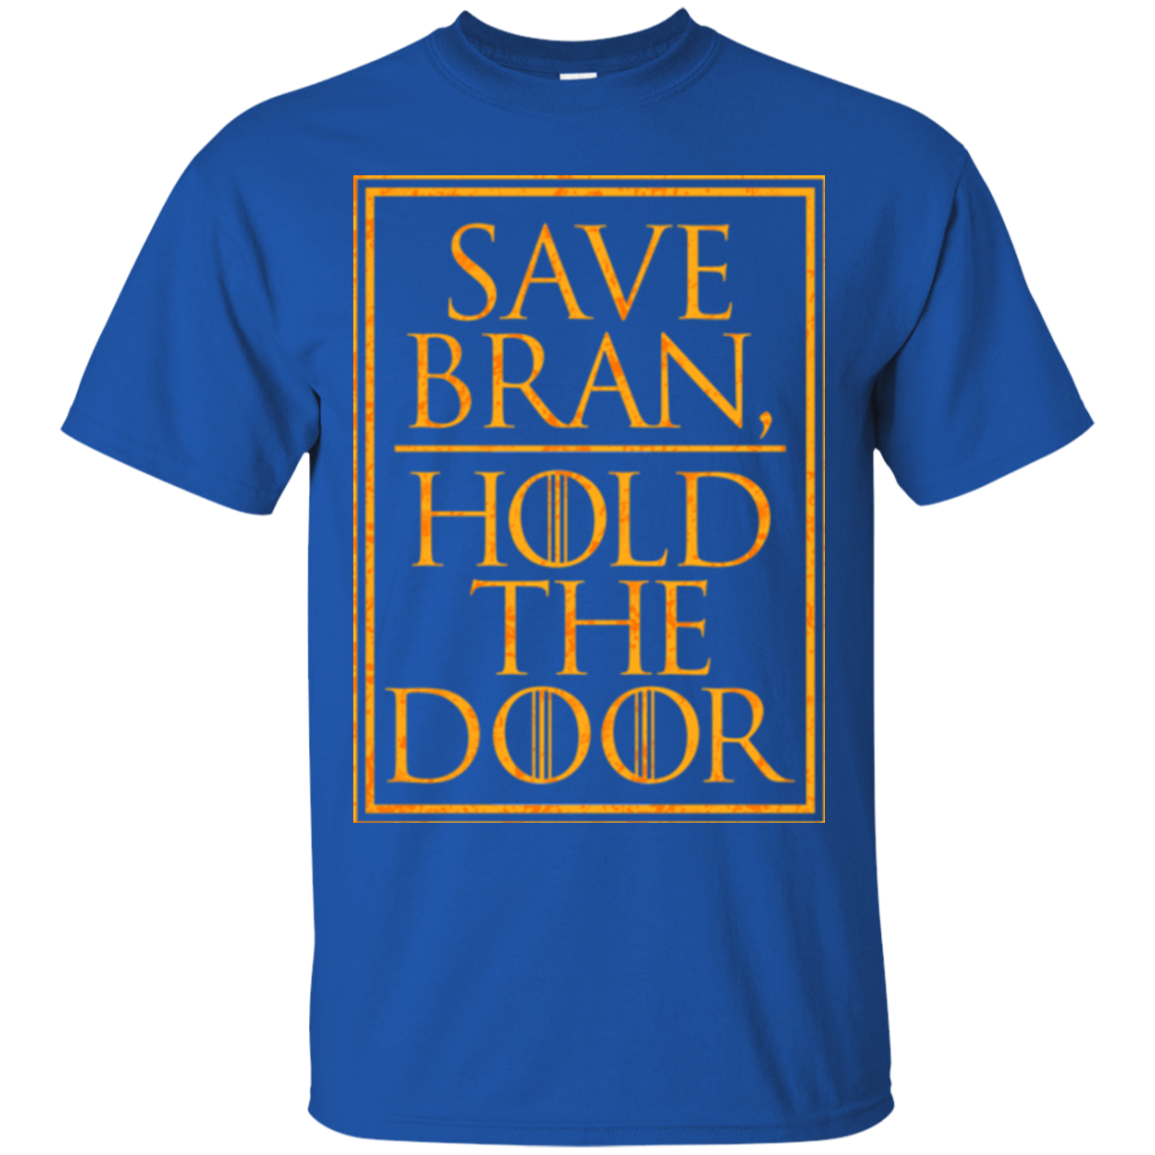 Hold the Door T-Shirt